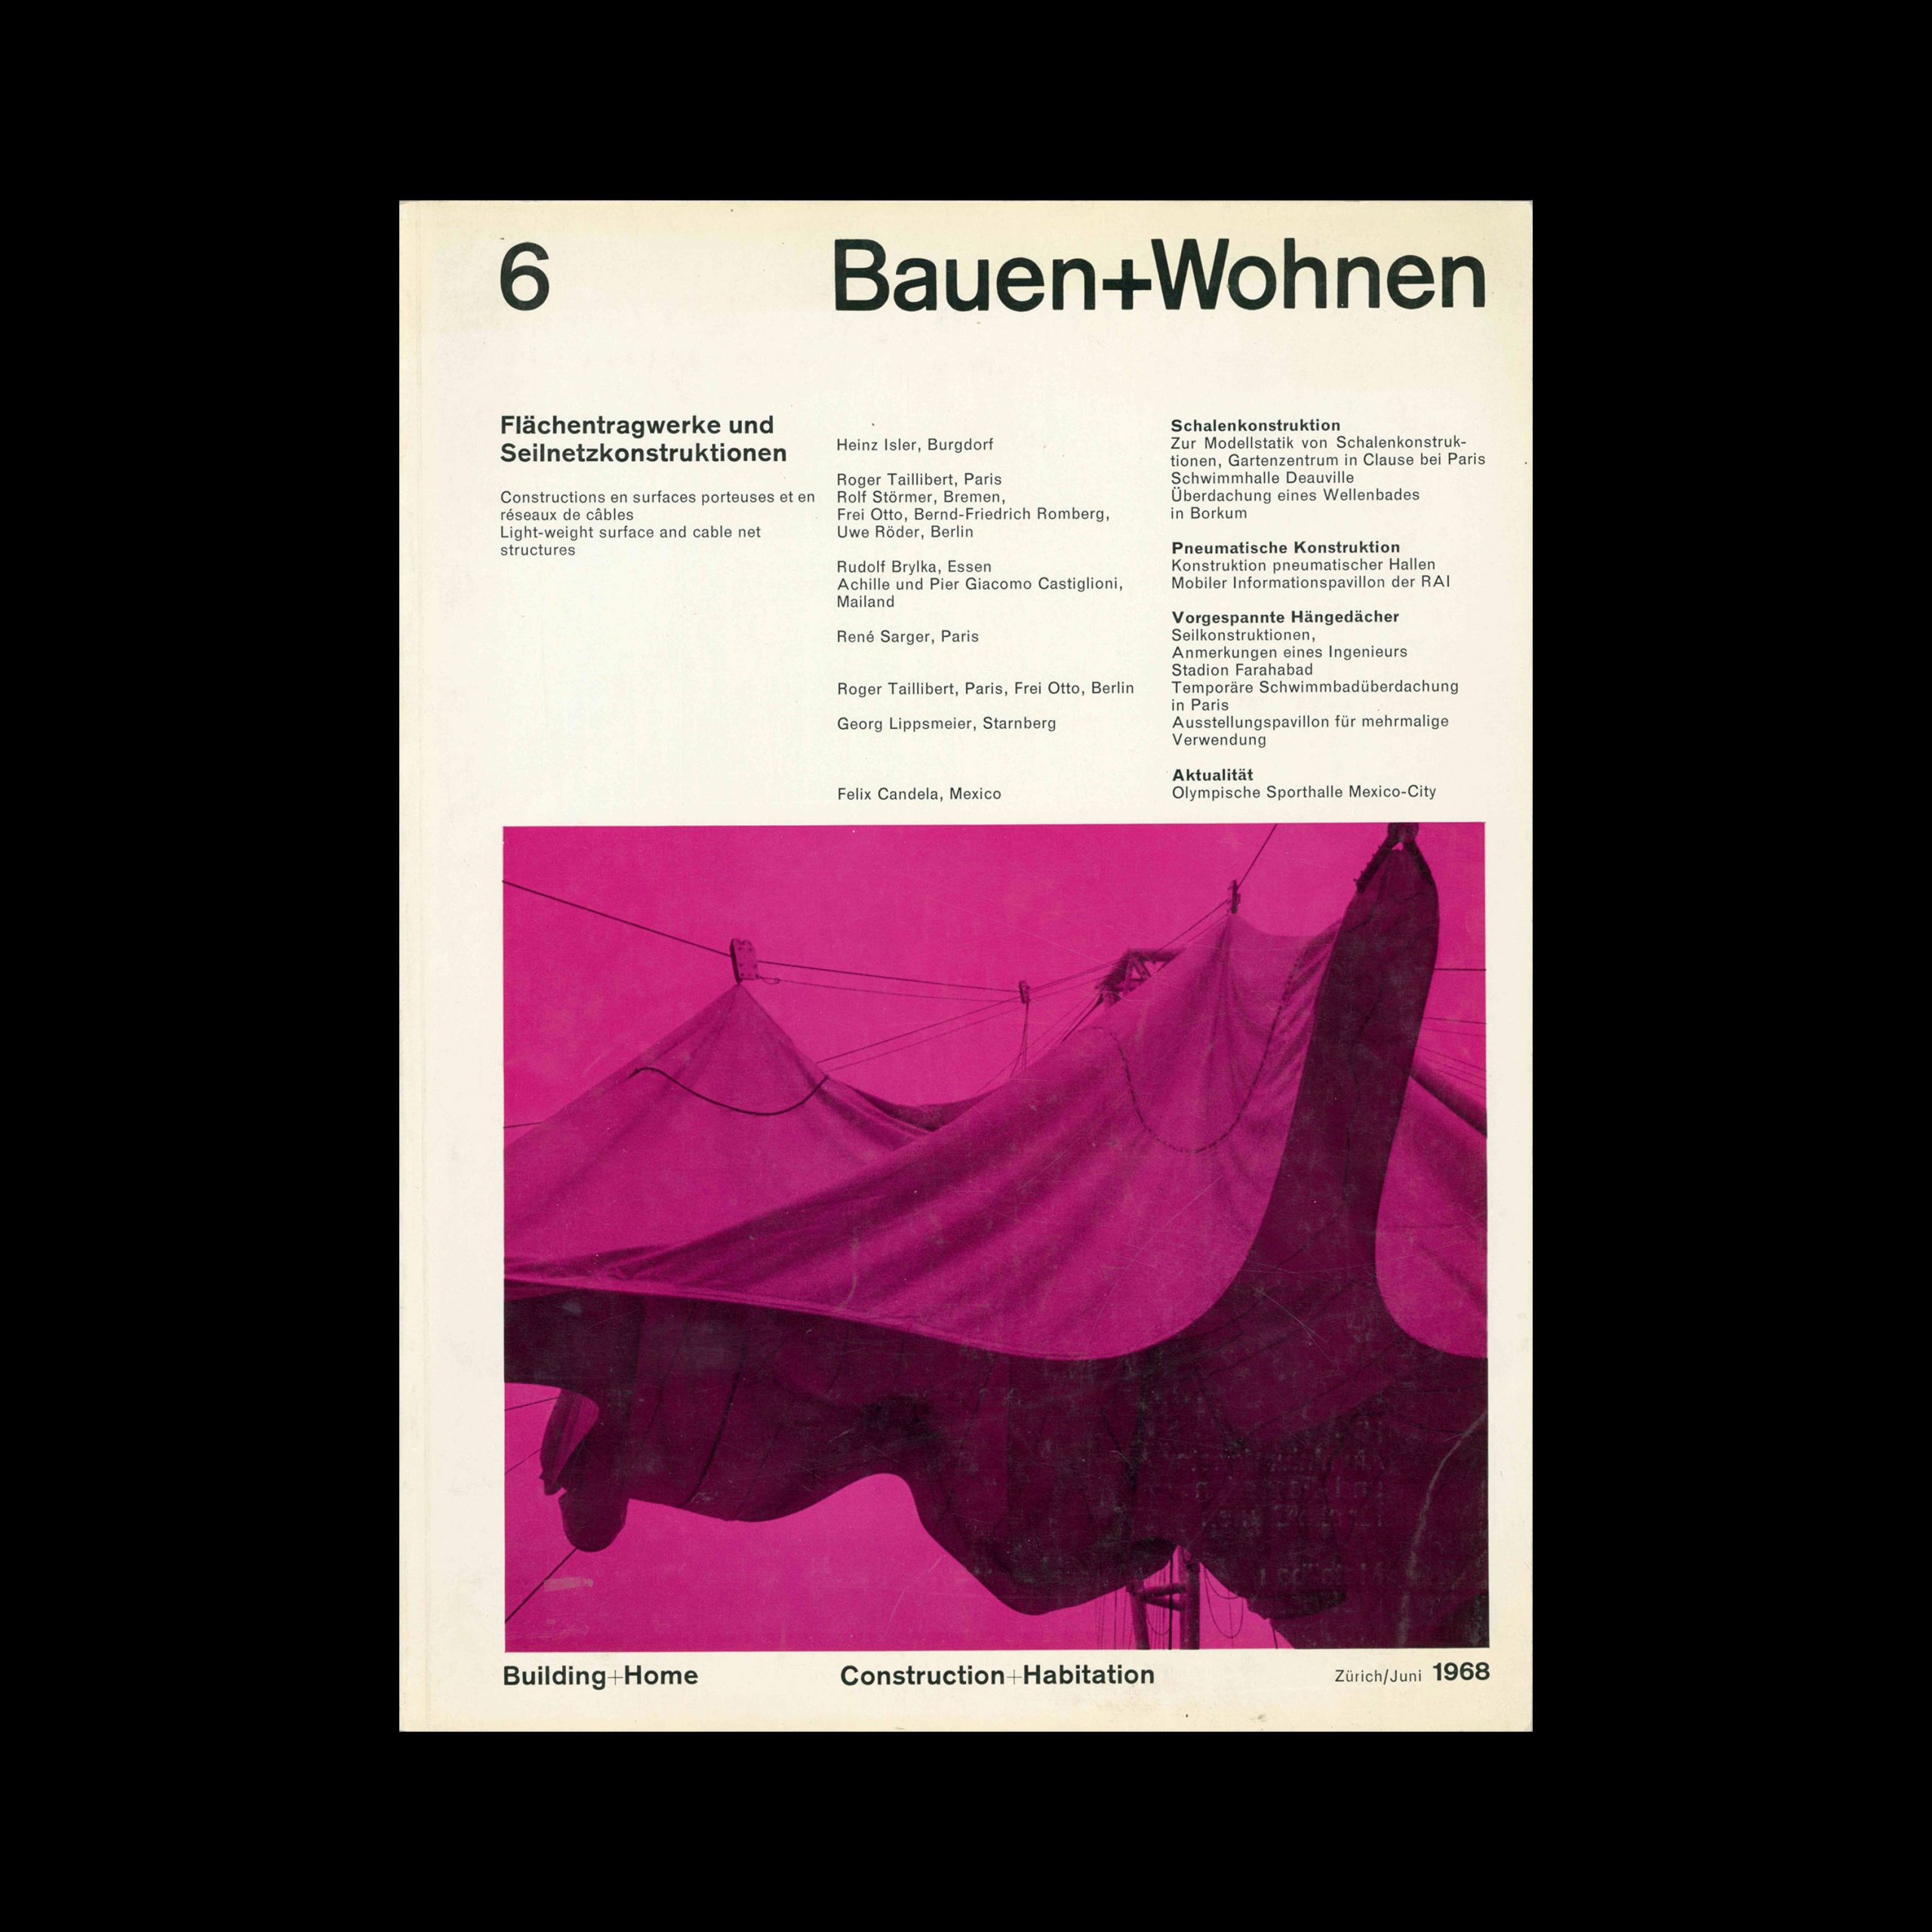 Bauen+Wohnen, 6, 1968. Designed by Emil Maurer